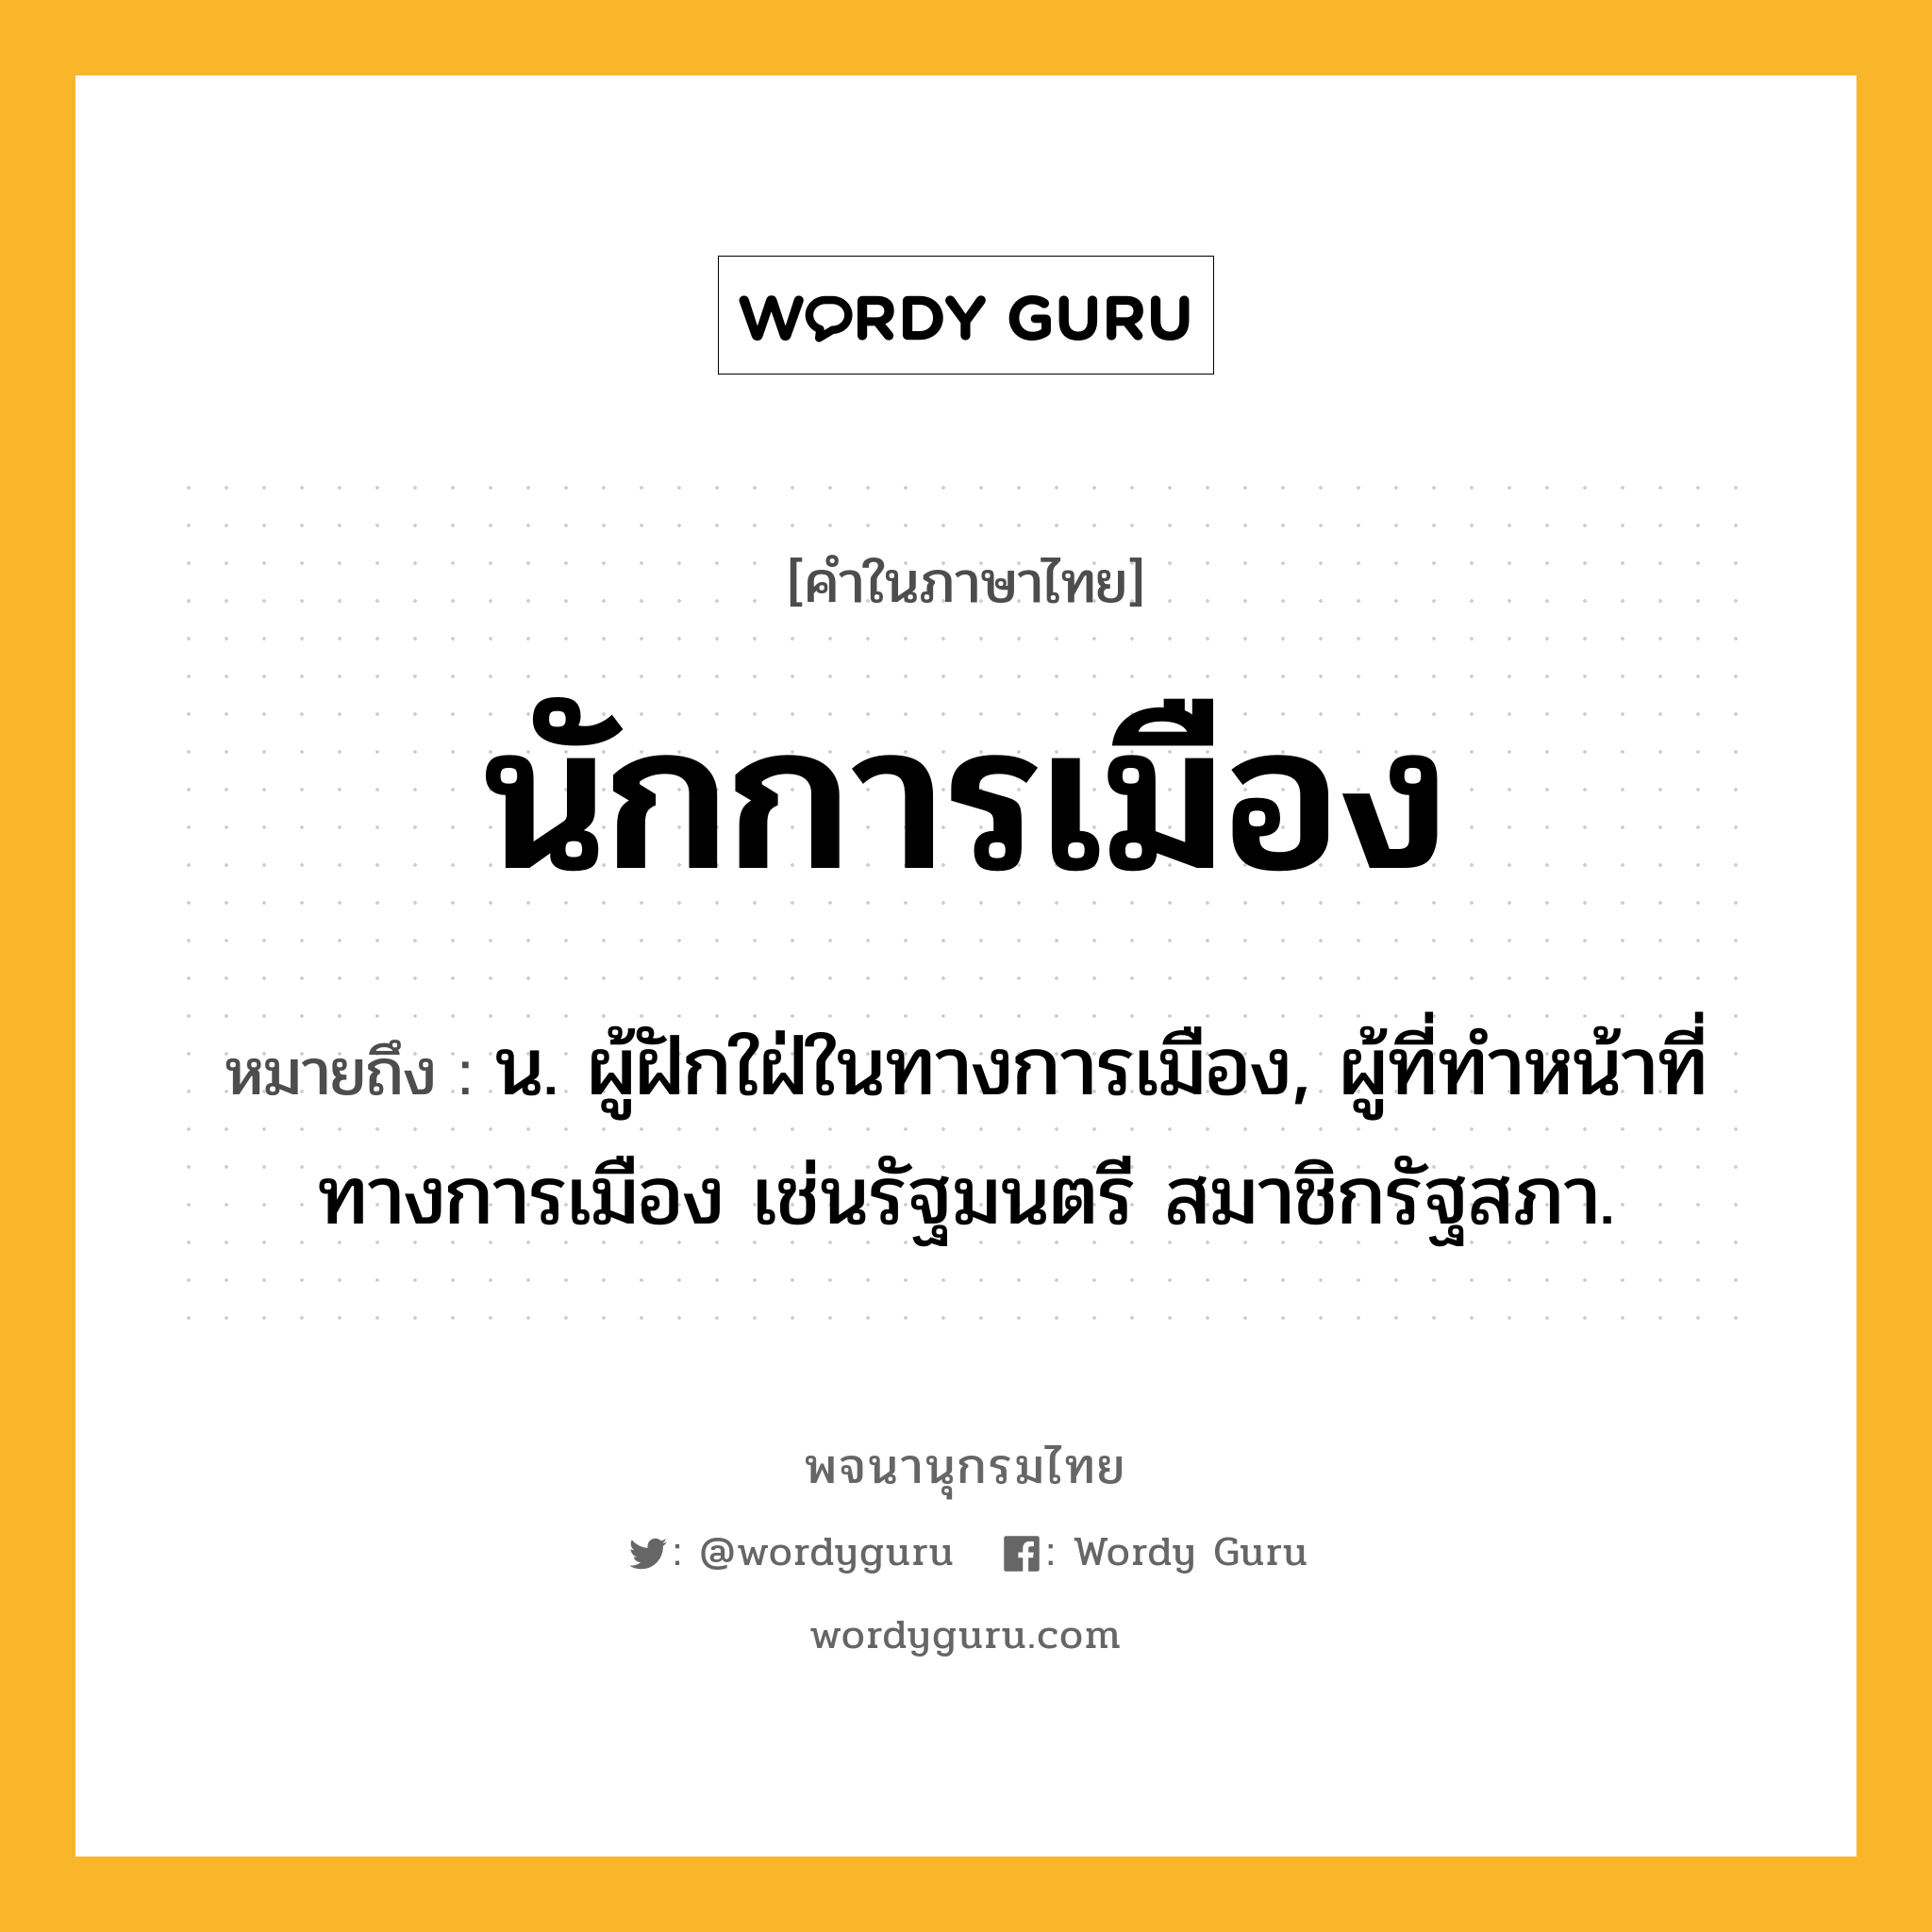 นักการเมือง หมายถึงอะไร?, คำในภาษาไทย นักการเมือง หมายถึง น. ผู้ฝักใฝ่ในทางการเมือง, ผู้ที่ทําหน้าที่ทางการเมือง เช่นรัฐมนตรี สมาชิกรัฐสภา.